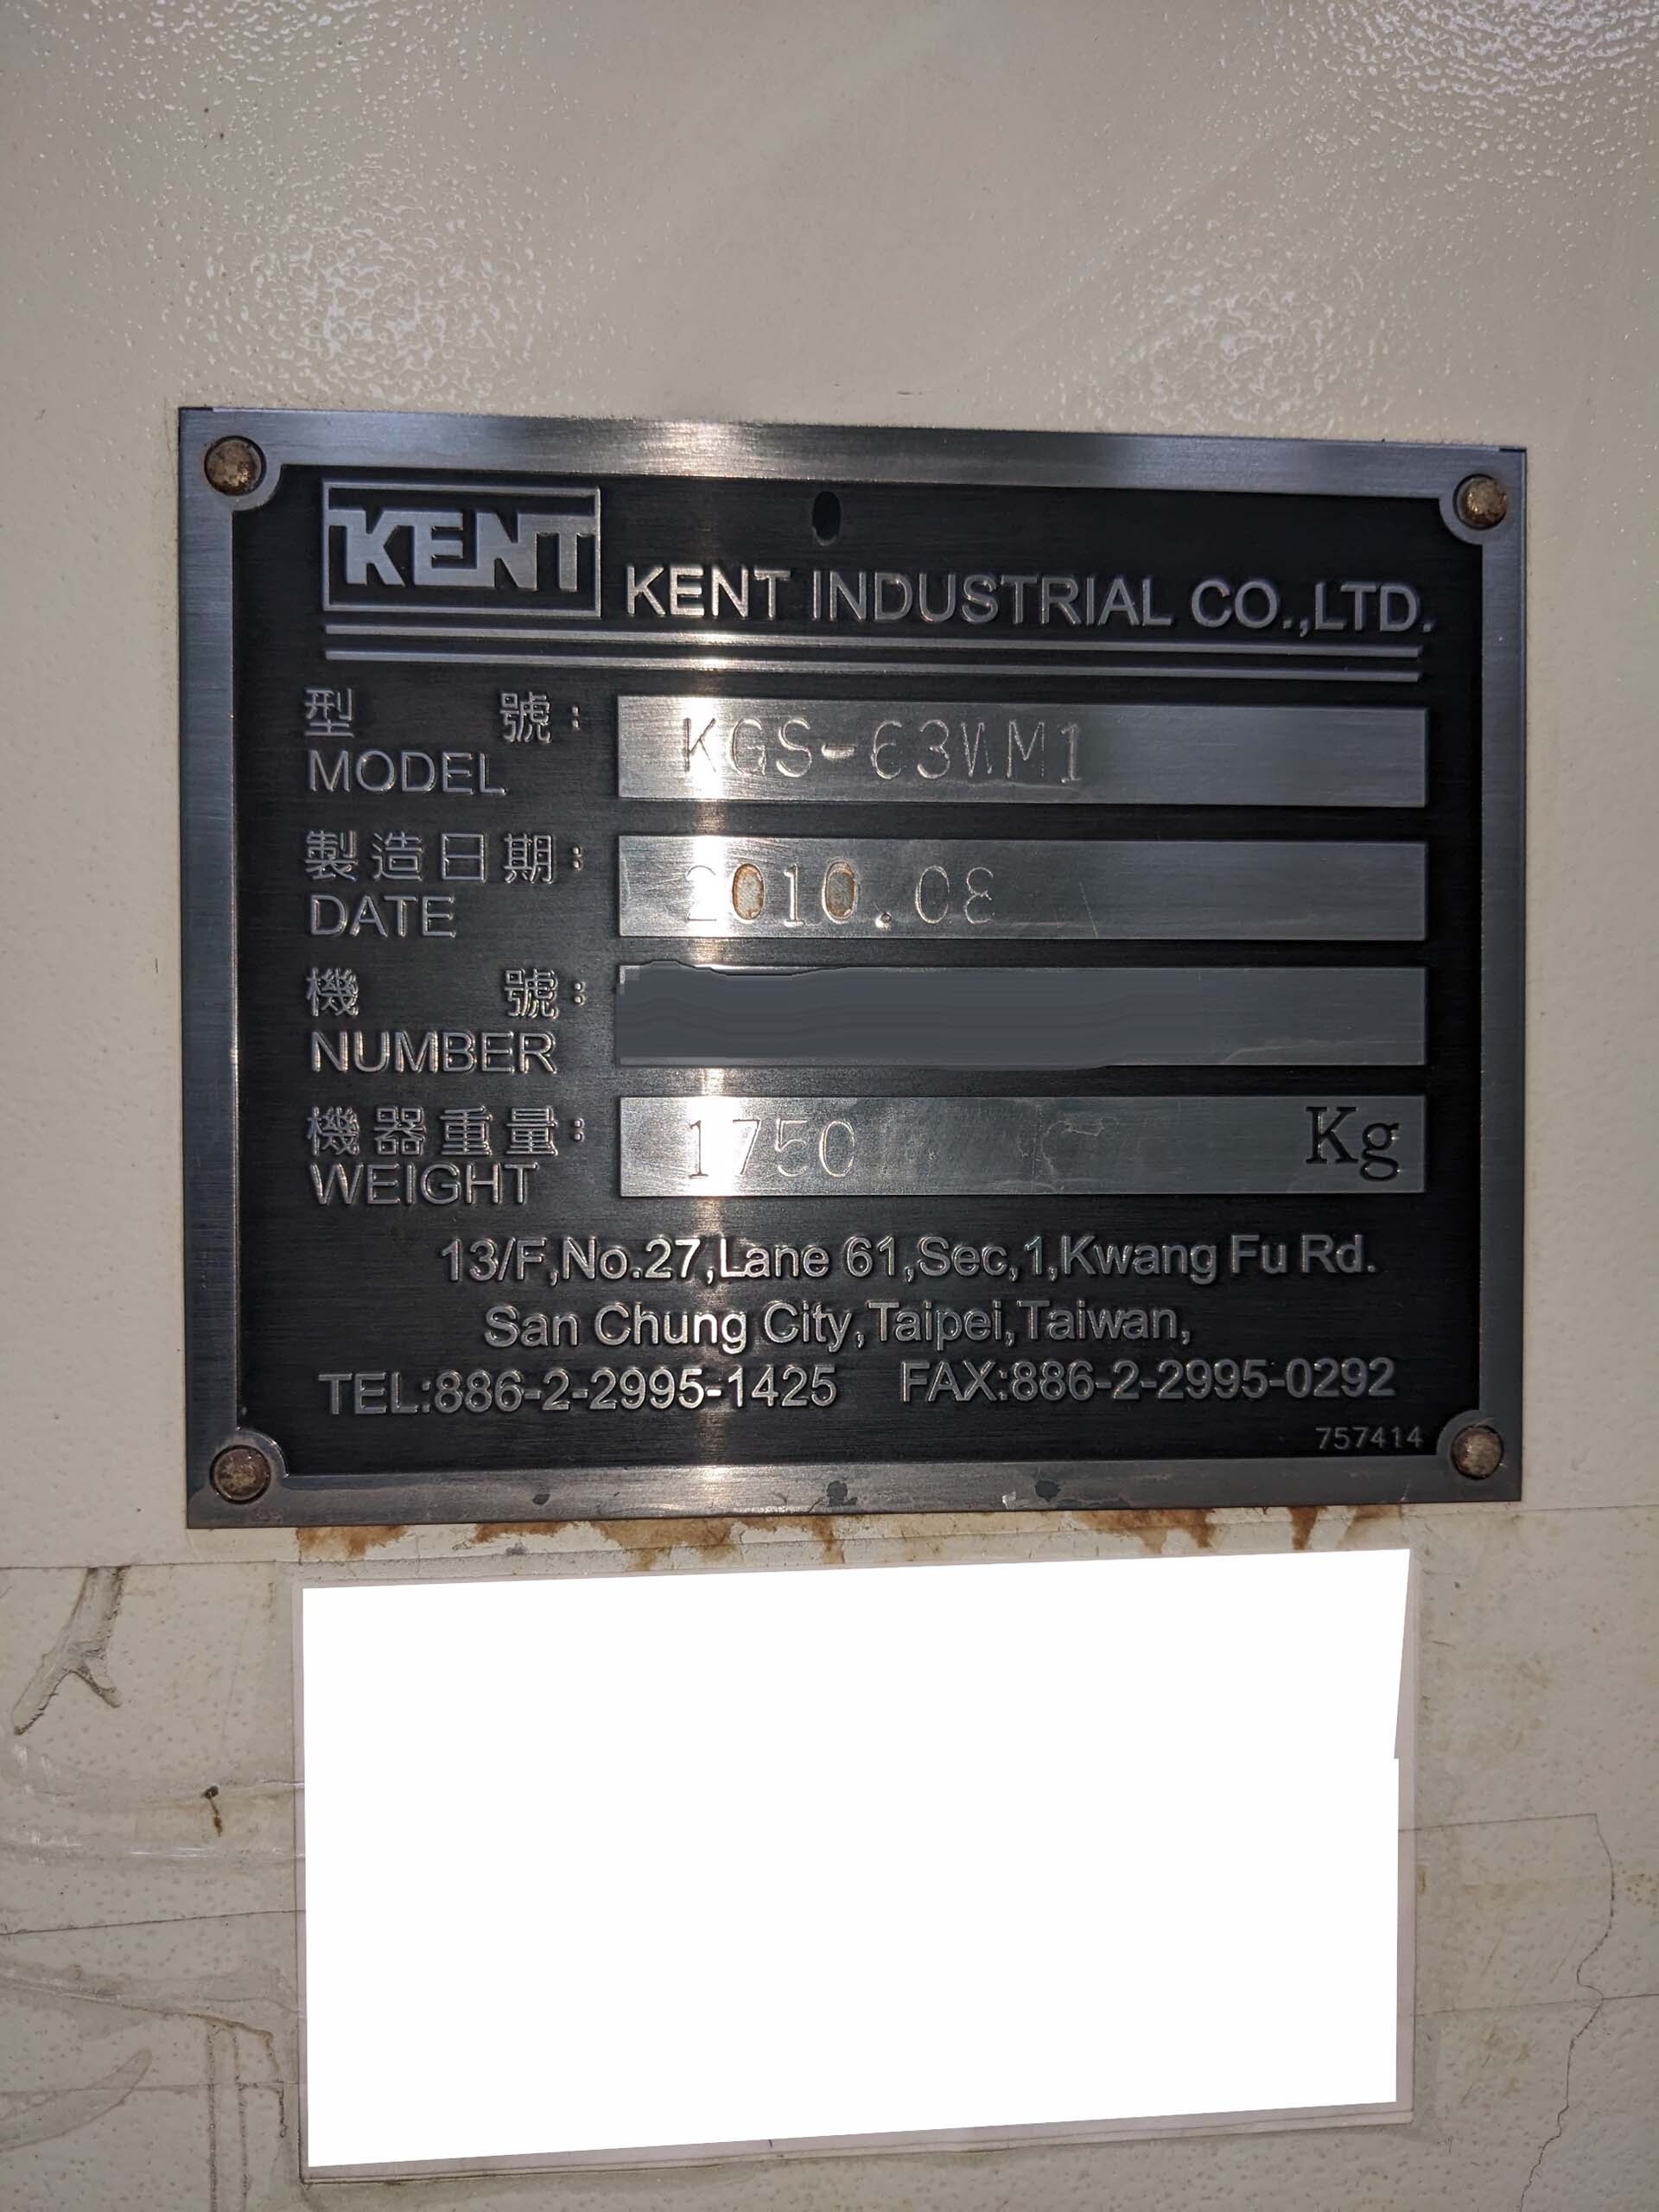 图为 已使用的 KENT KGS-63WM1 待售